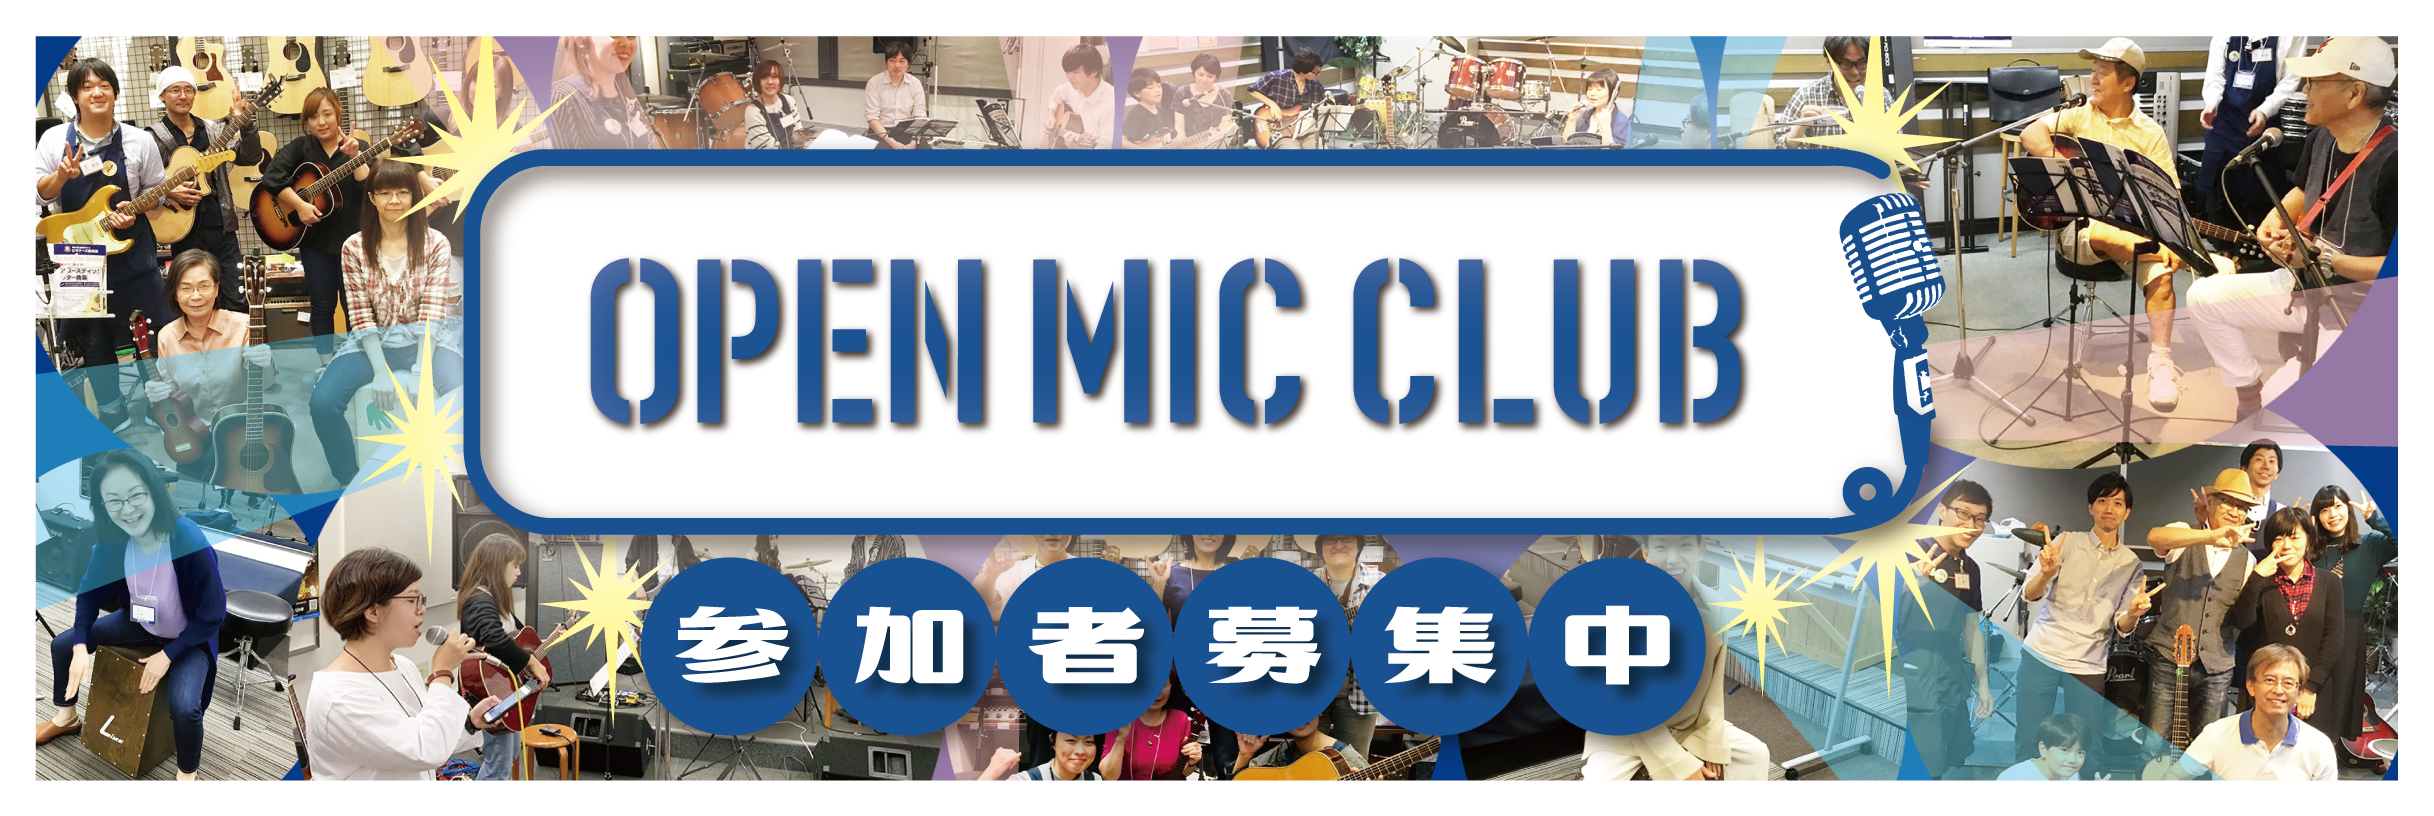 OPEN MIC CLUBサークル担当の小池です！]]9月12日（日）に開催された「OPEN MIC CLUB」のサークル活動をレポートします！ *河原町店「OPEN MIC CLUB」は私が担当しています！ |*名前|小池| これからオープンマイククラブを担当します小池です！]]「OPEN MIC […]